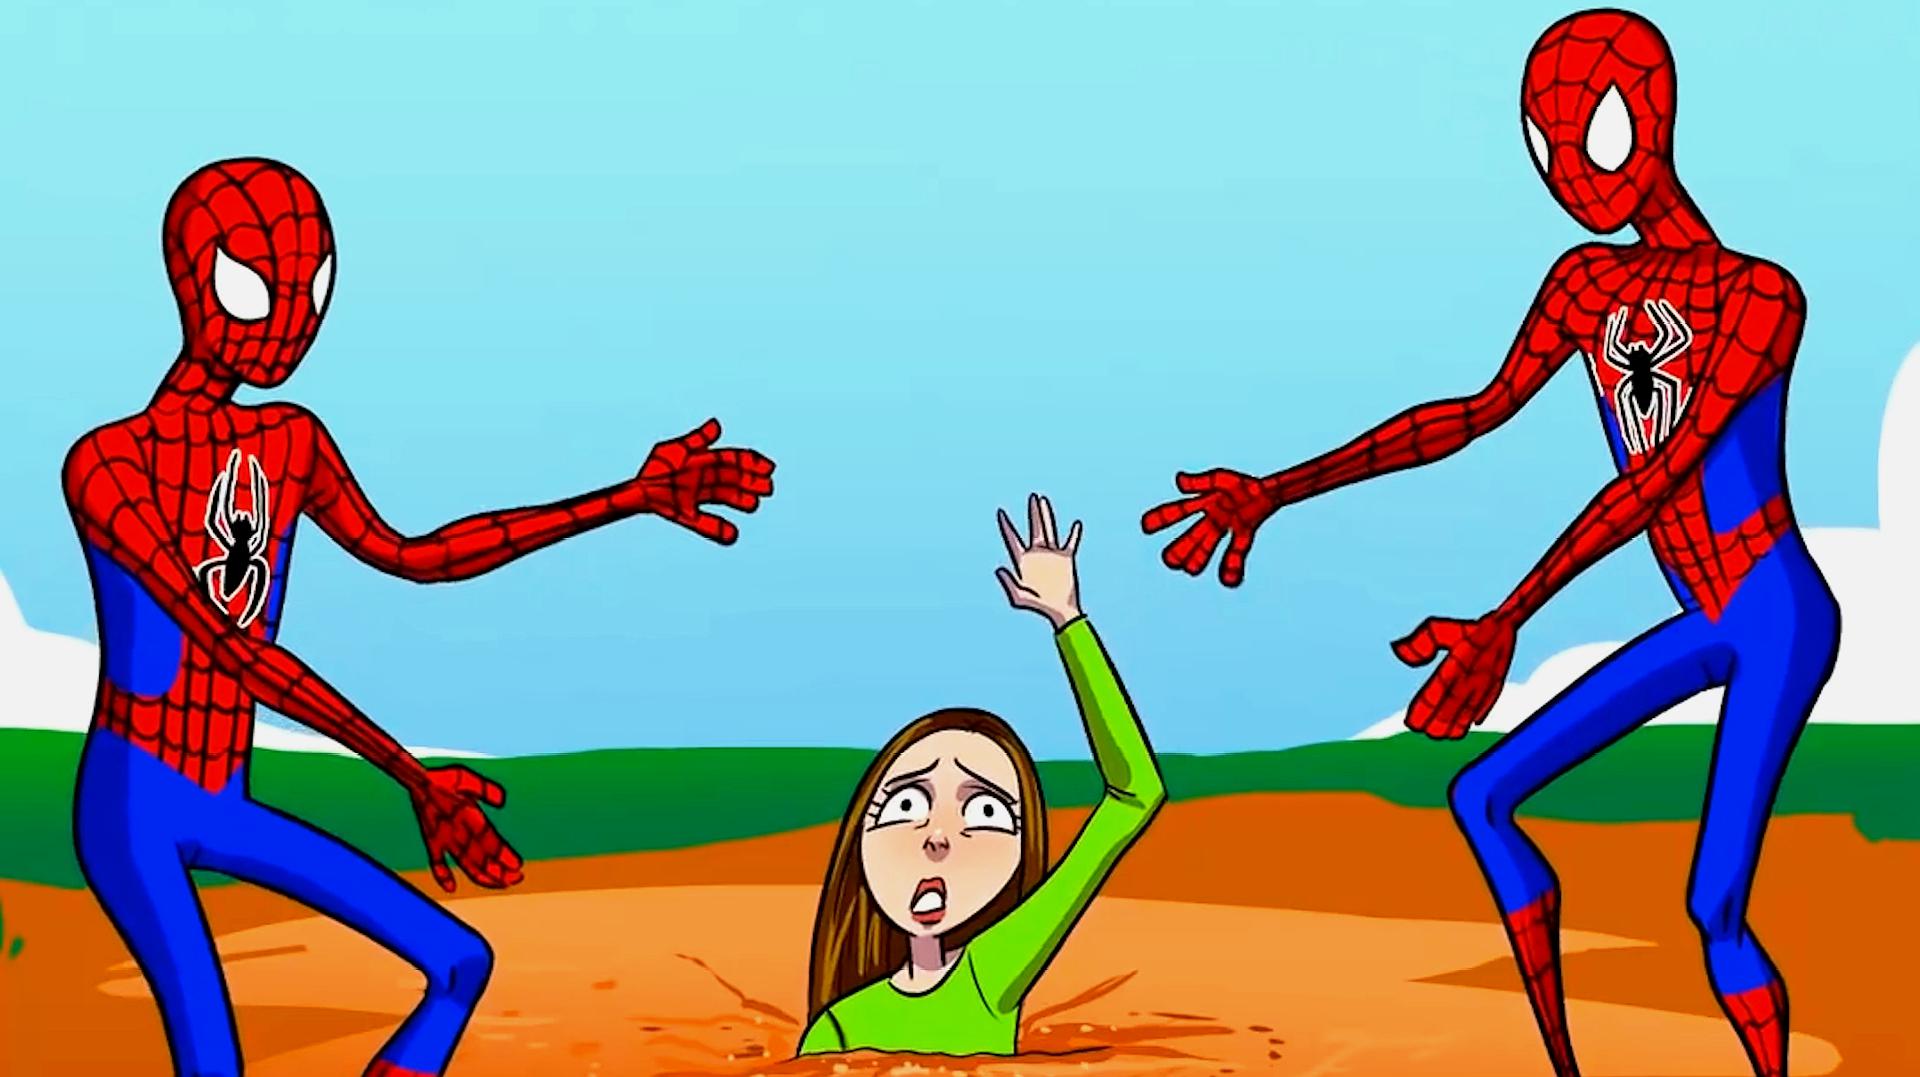 推理动画:哪一个蜘蛛侠是假的?